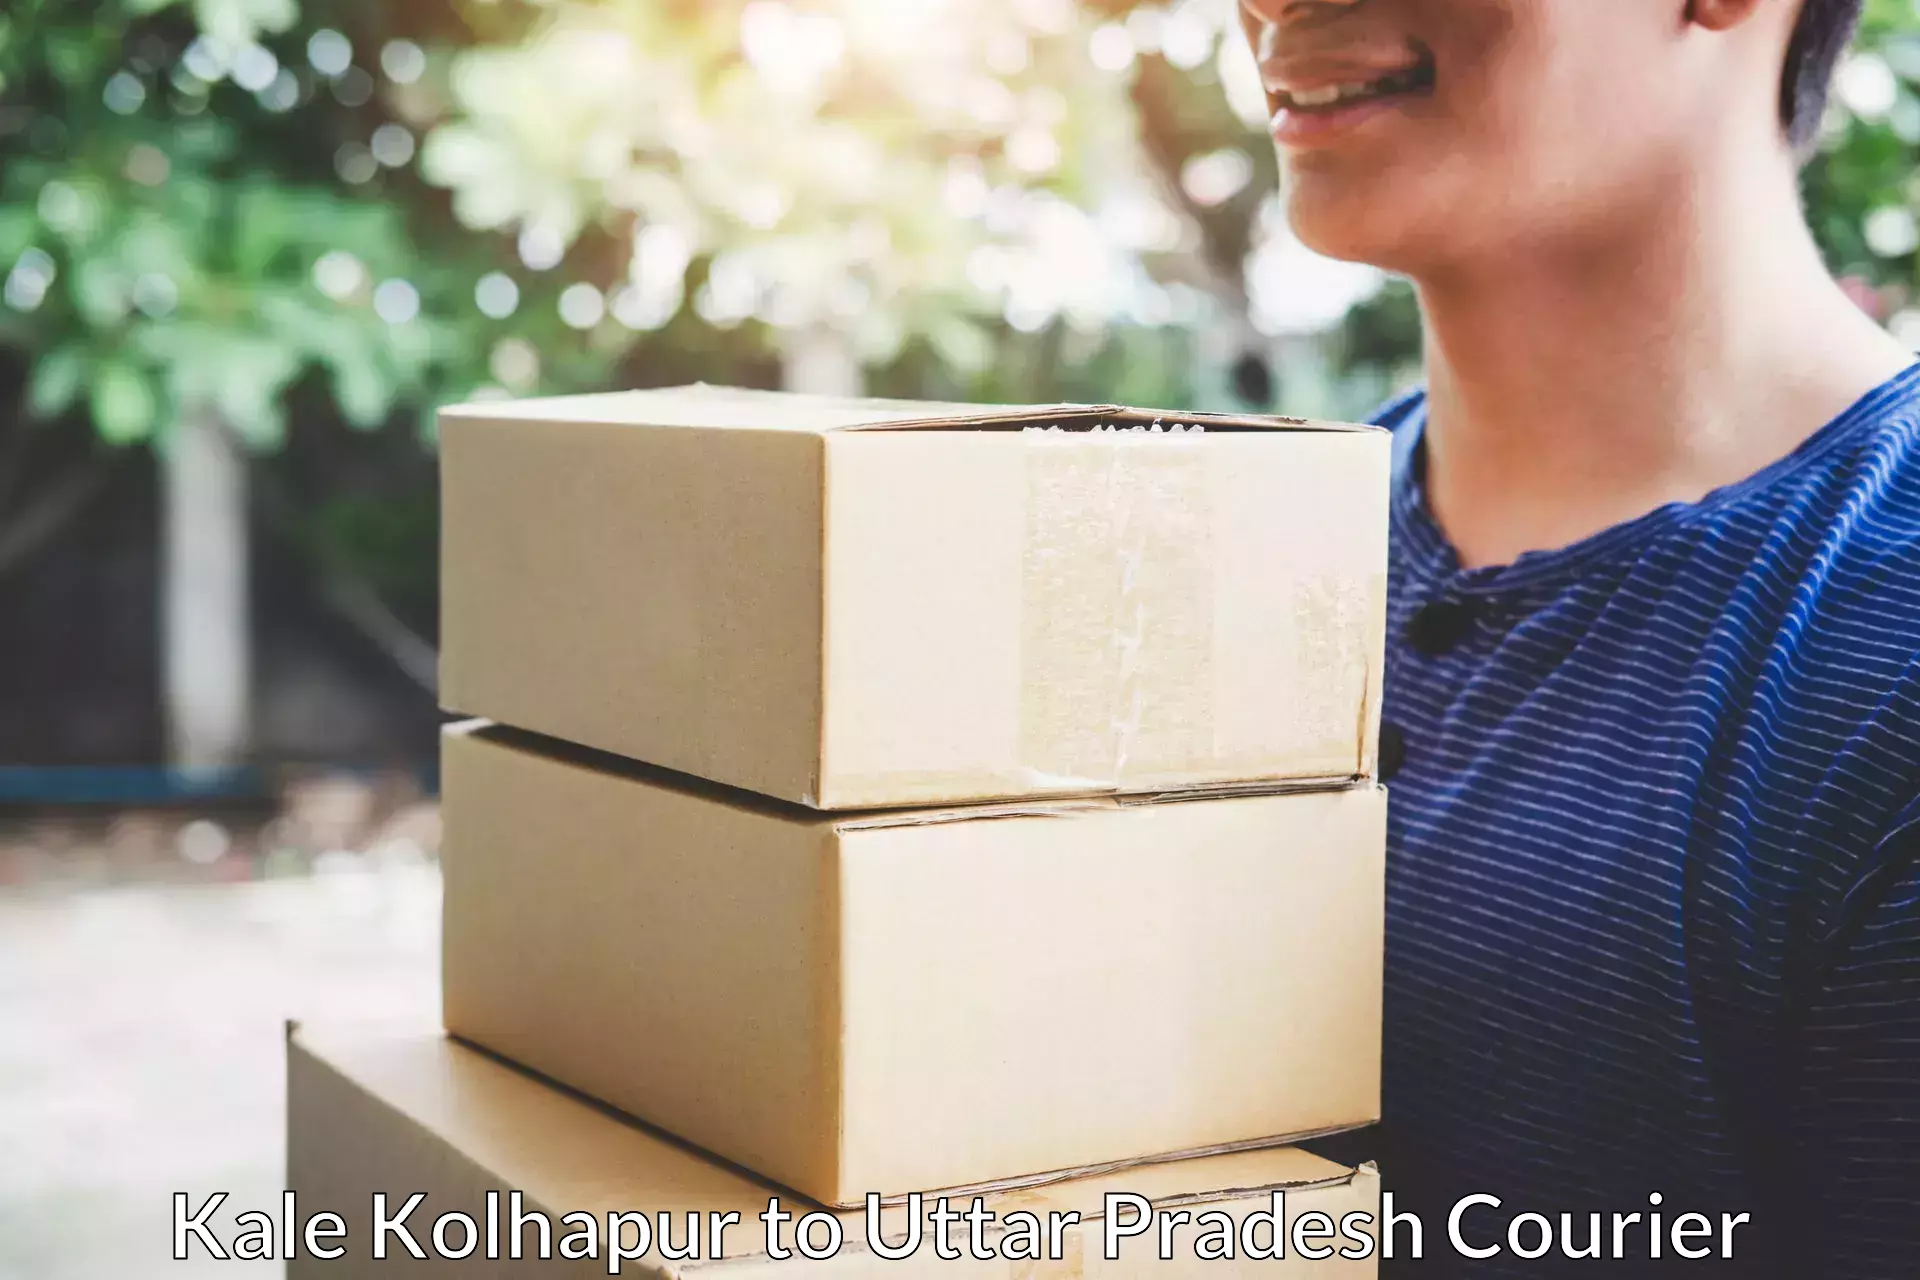 Furniture delivery service Kale Kolhapur to Kunda